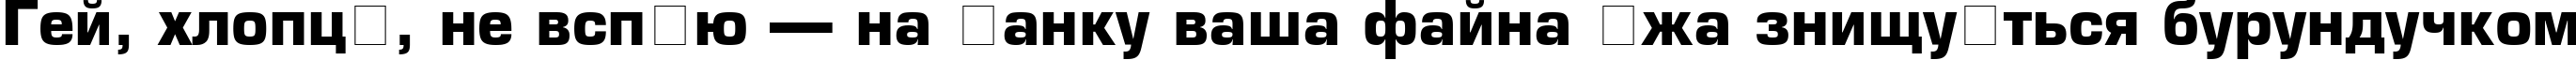 Пример написания шрифтом font144 текста на украинском